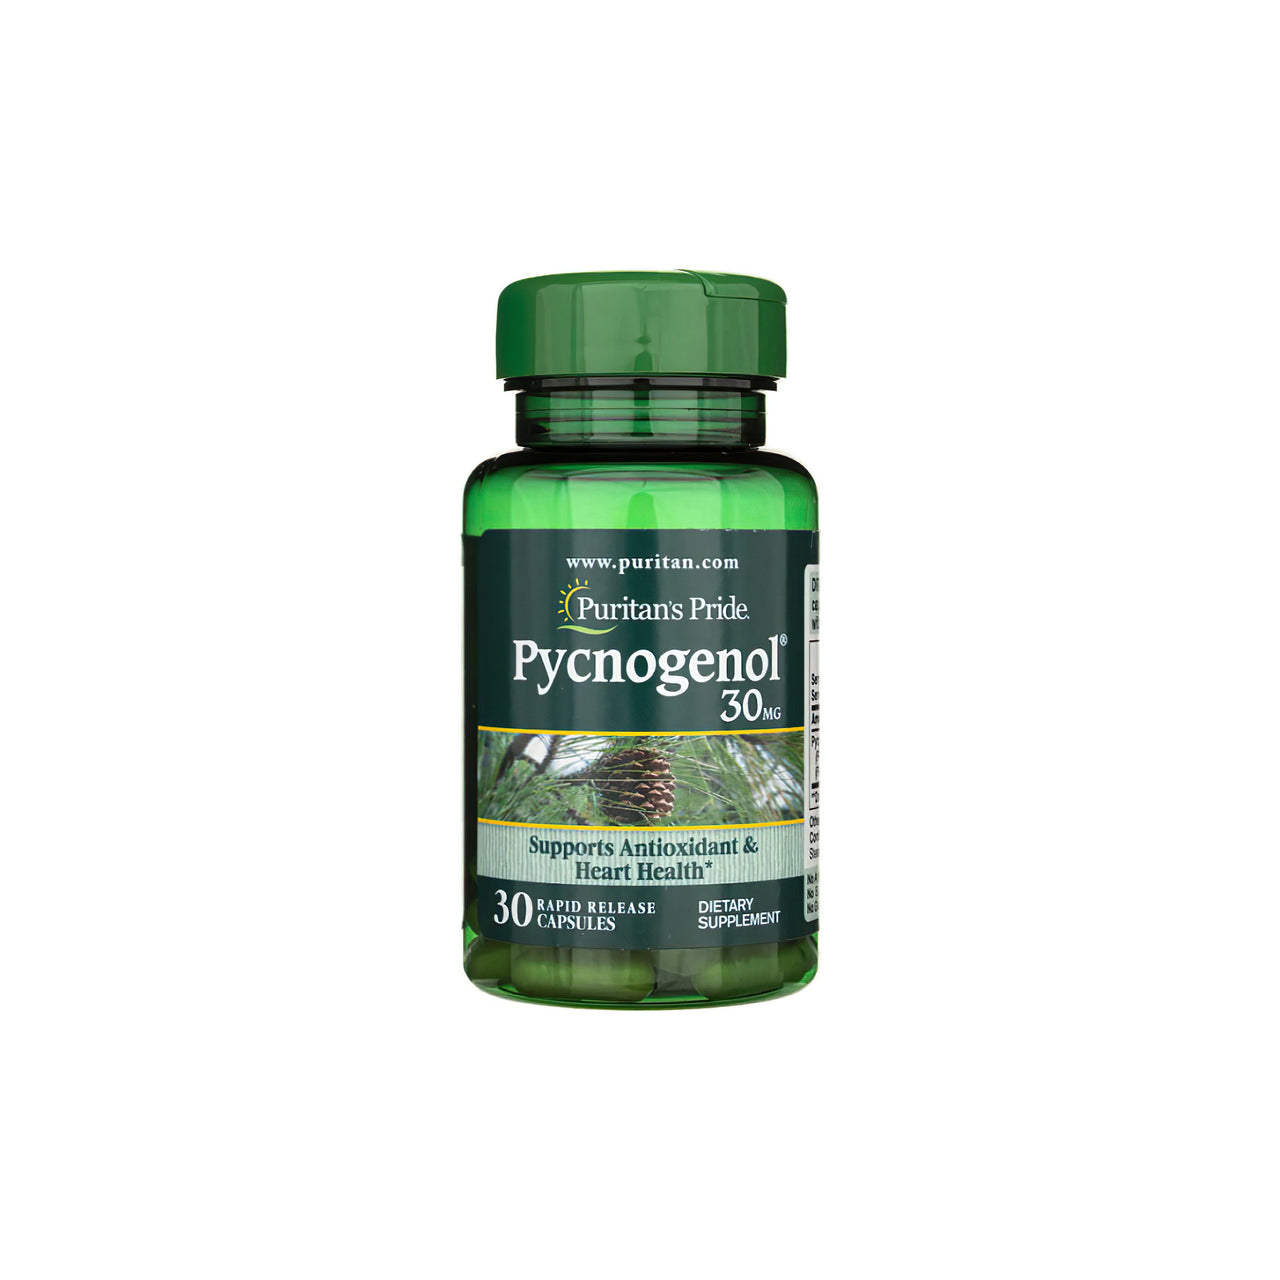 Um frasco de Pycnogenol 30 mg 30 Rapid Release Capsules com extrato de pinheiro-bravo francês de Puritan's Pride.